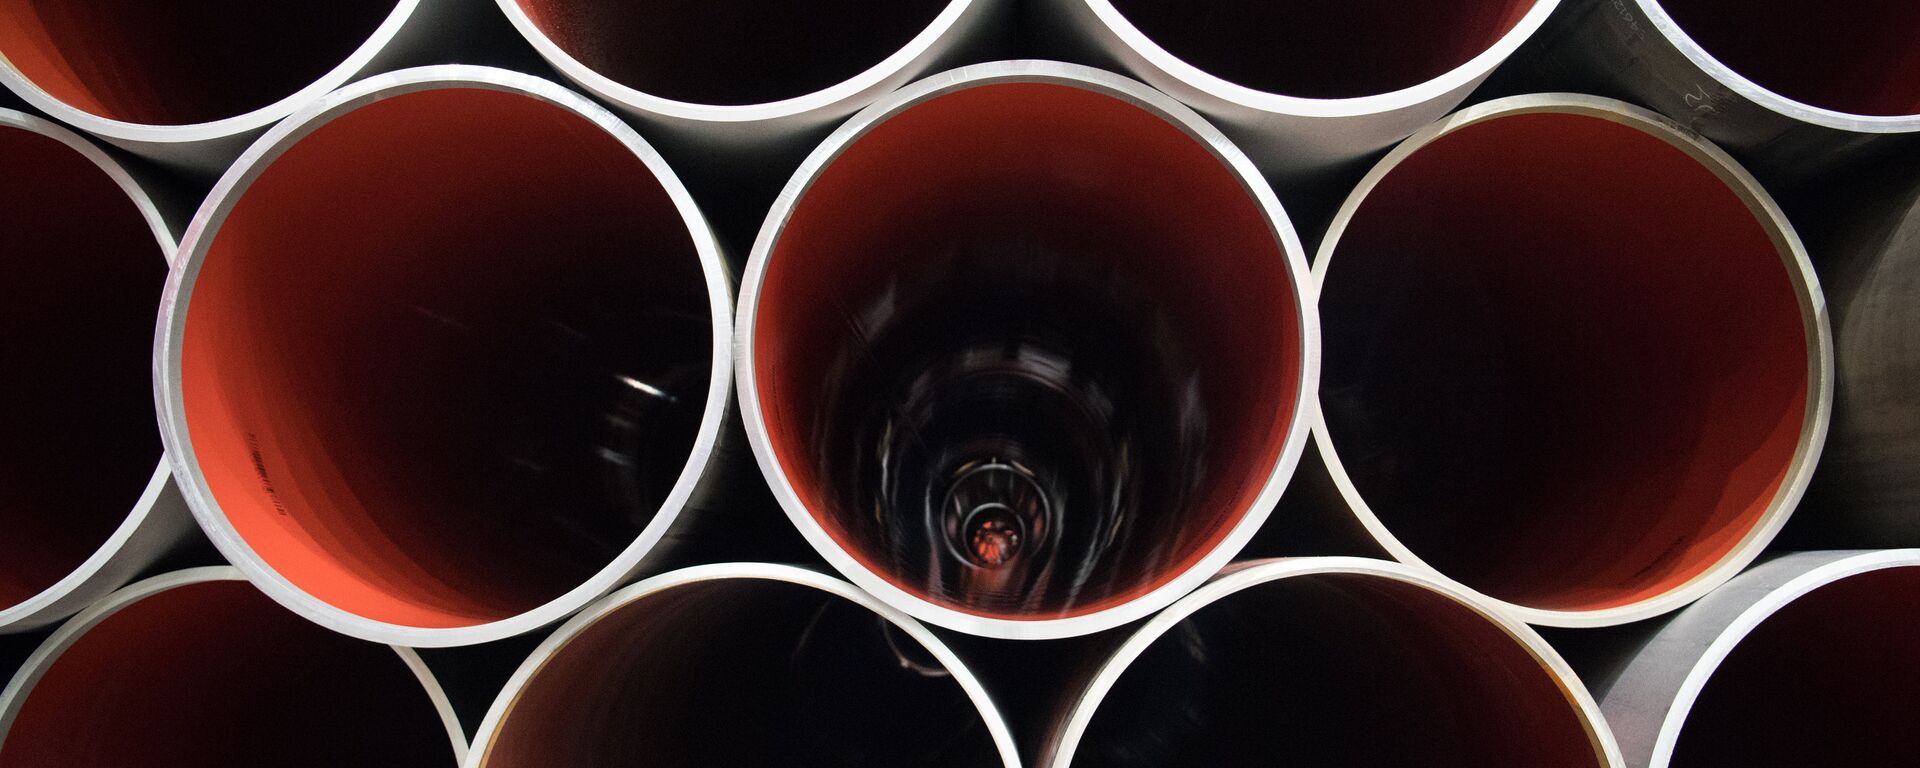 Las tuberías de un gasoducto (imagen referencial) - Sputnik Mundo, 1920, 23.01.2022